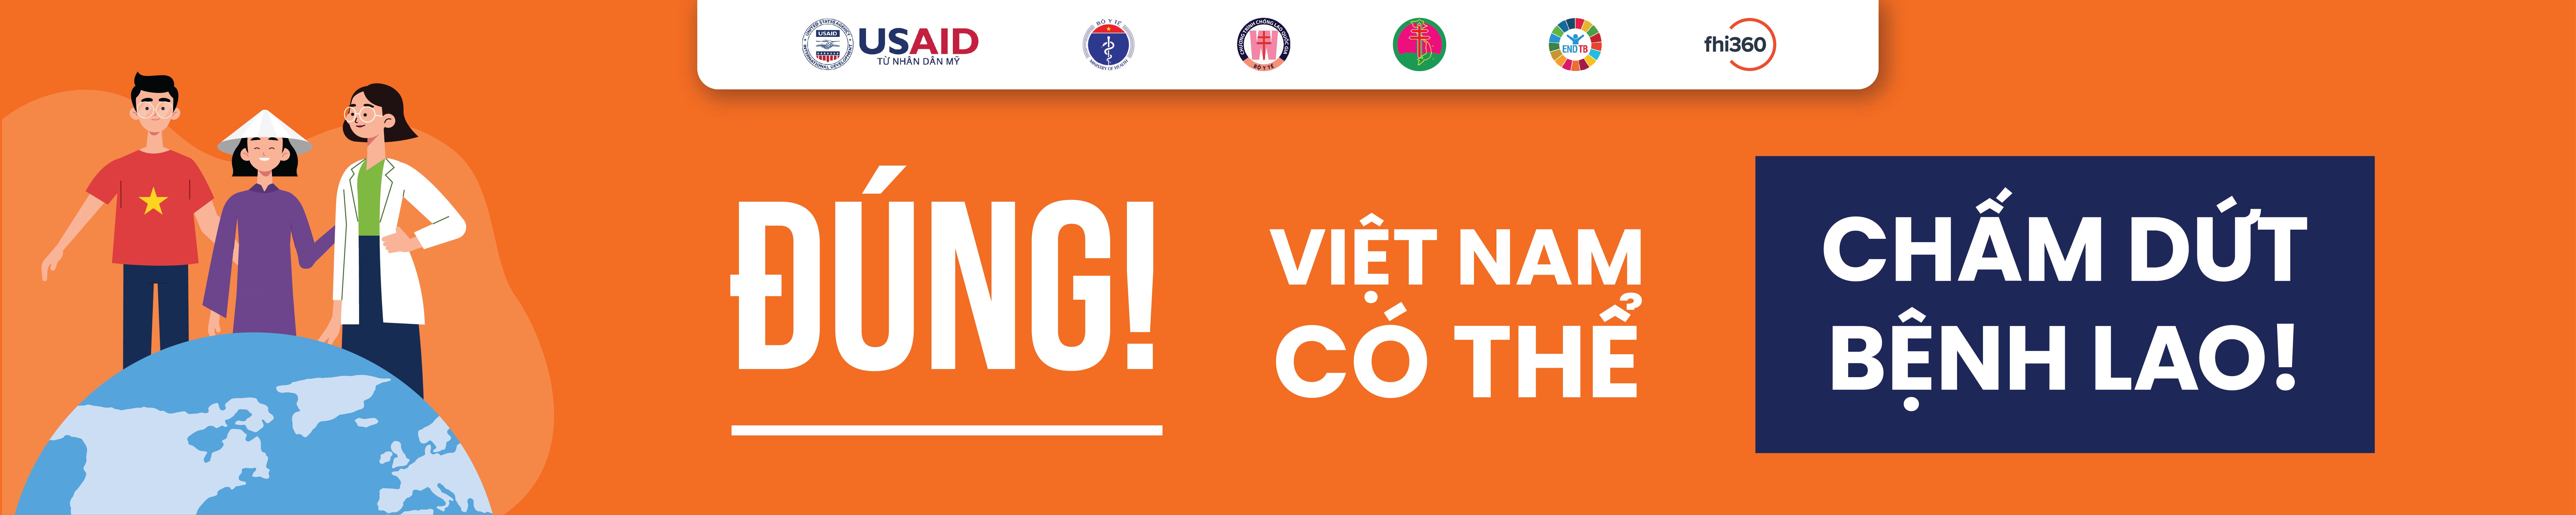 1. Đúng! Việt Nam Có Thể Chấm Dứt Bệnh Lao.jpg